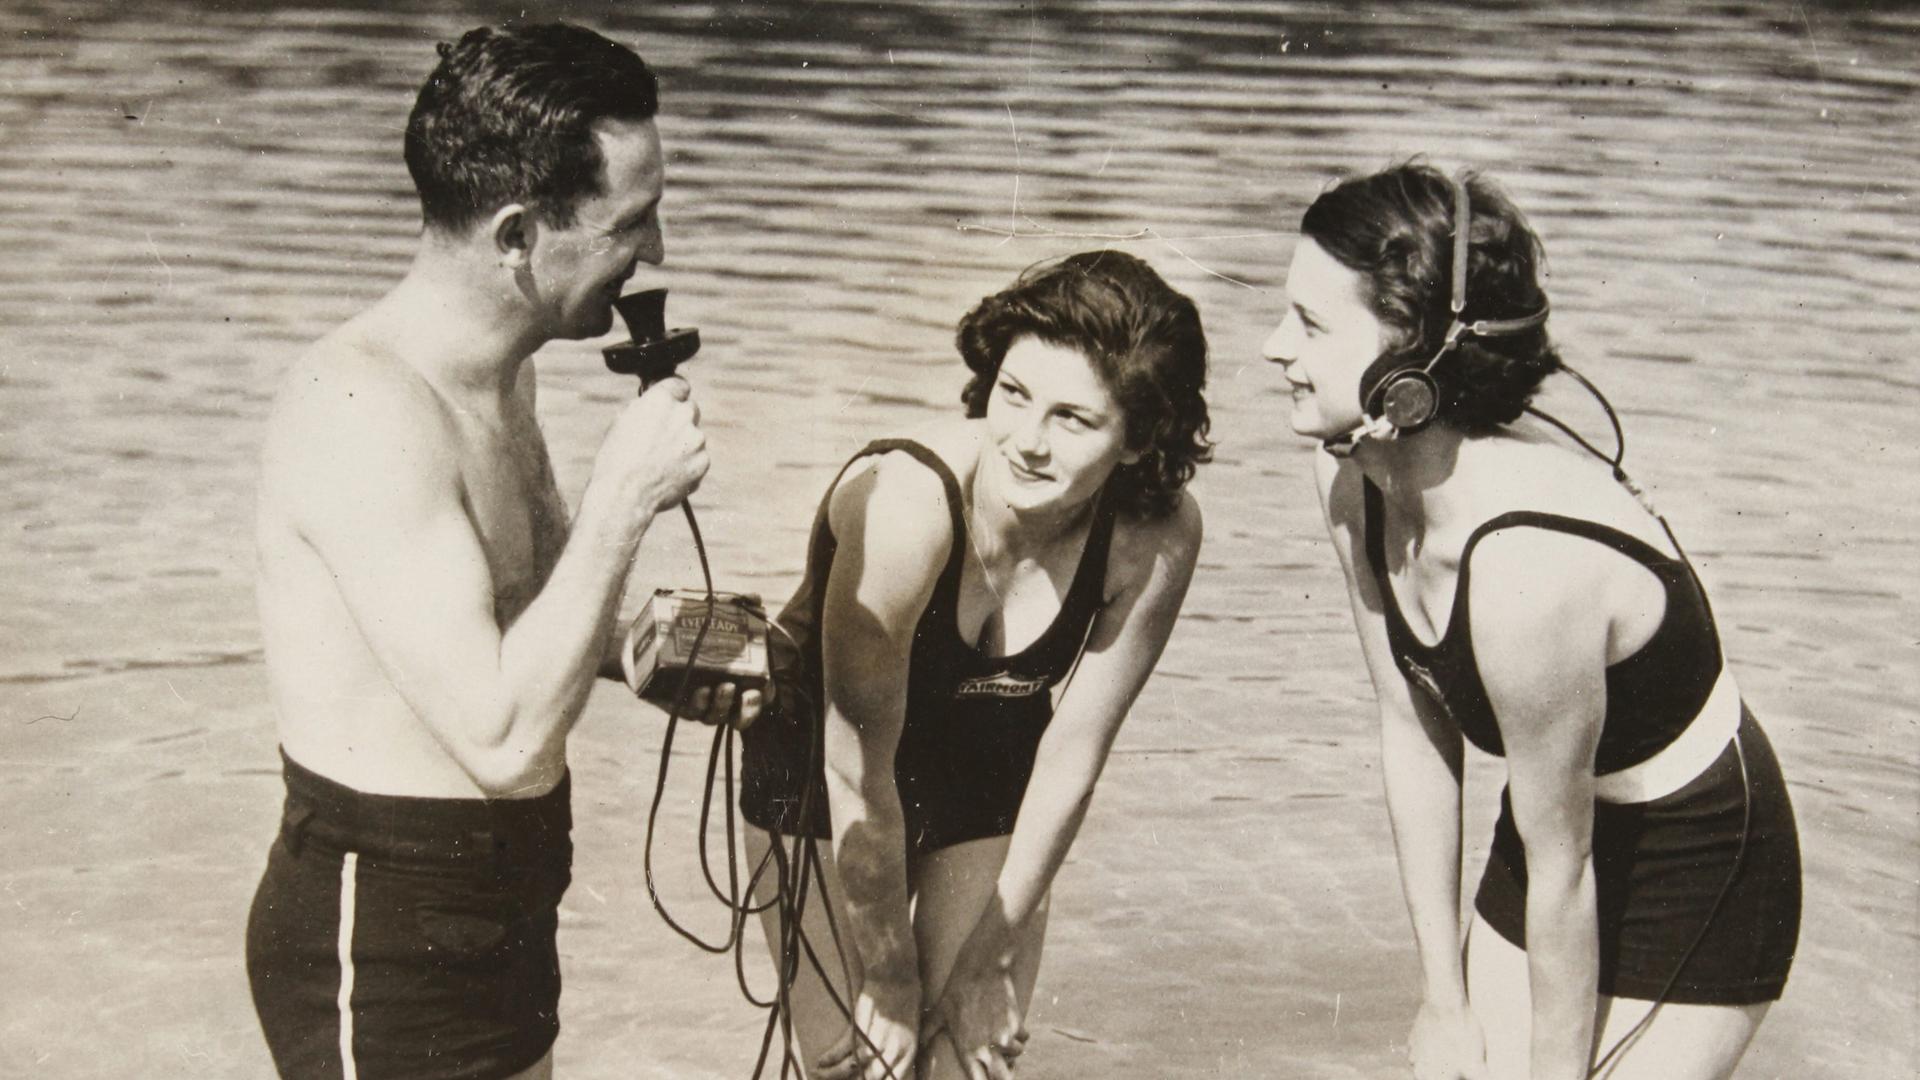 Auf dem Schwarzweißfoto von April 1934 ist links ein Mann in Badehose zu sehen, der ein Mikrofon hält und knietief im Wasser steht. Rechts von ihm stehen zwei junge Frauen, von denen eine einen Kopfhörer trägt, der über Kabel und ein Kästchen mit dem Mikro des Mannes verbunden ist. Die Frauen stehen auch im Wasser und schaeun den Mann an. 